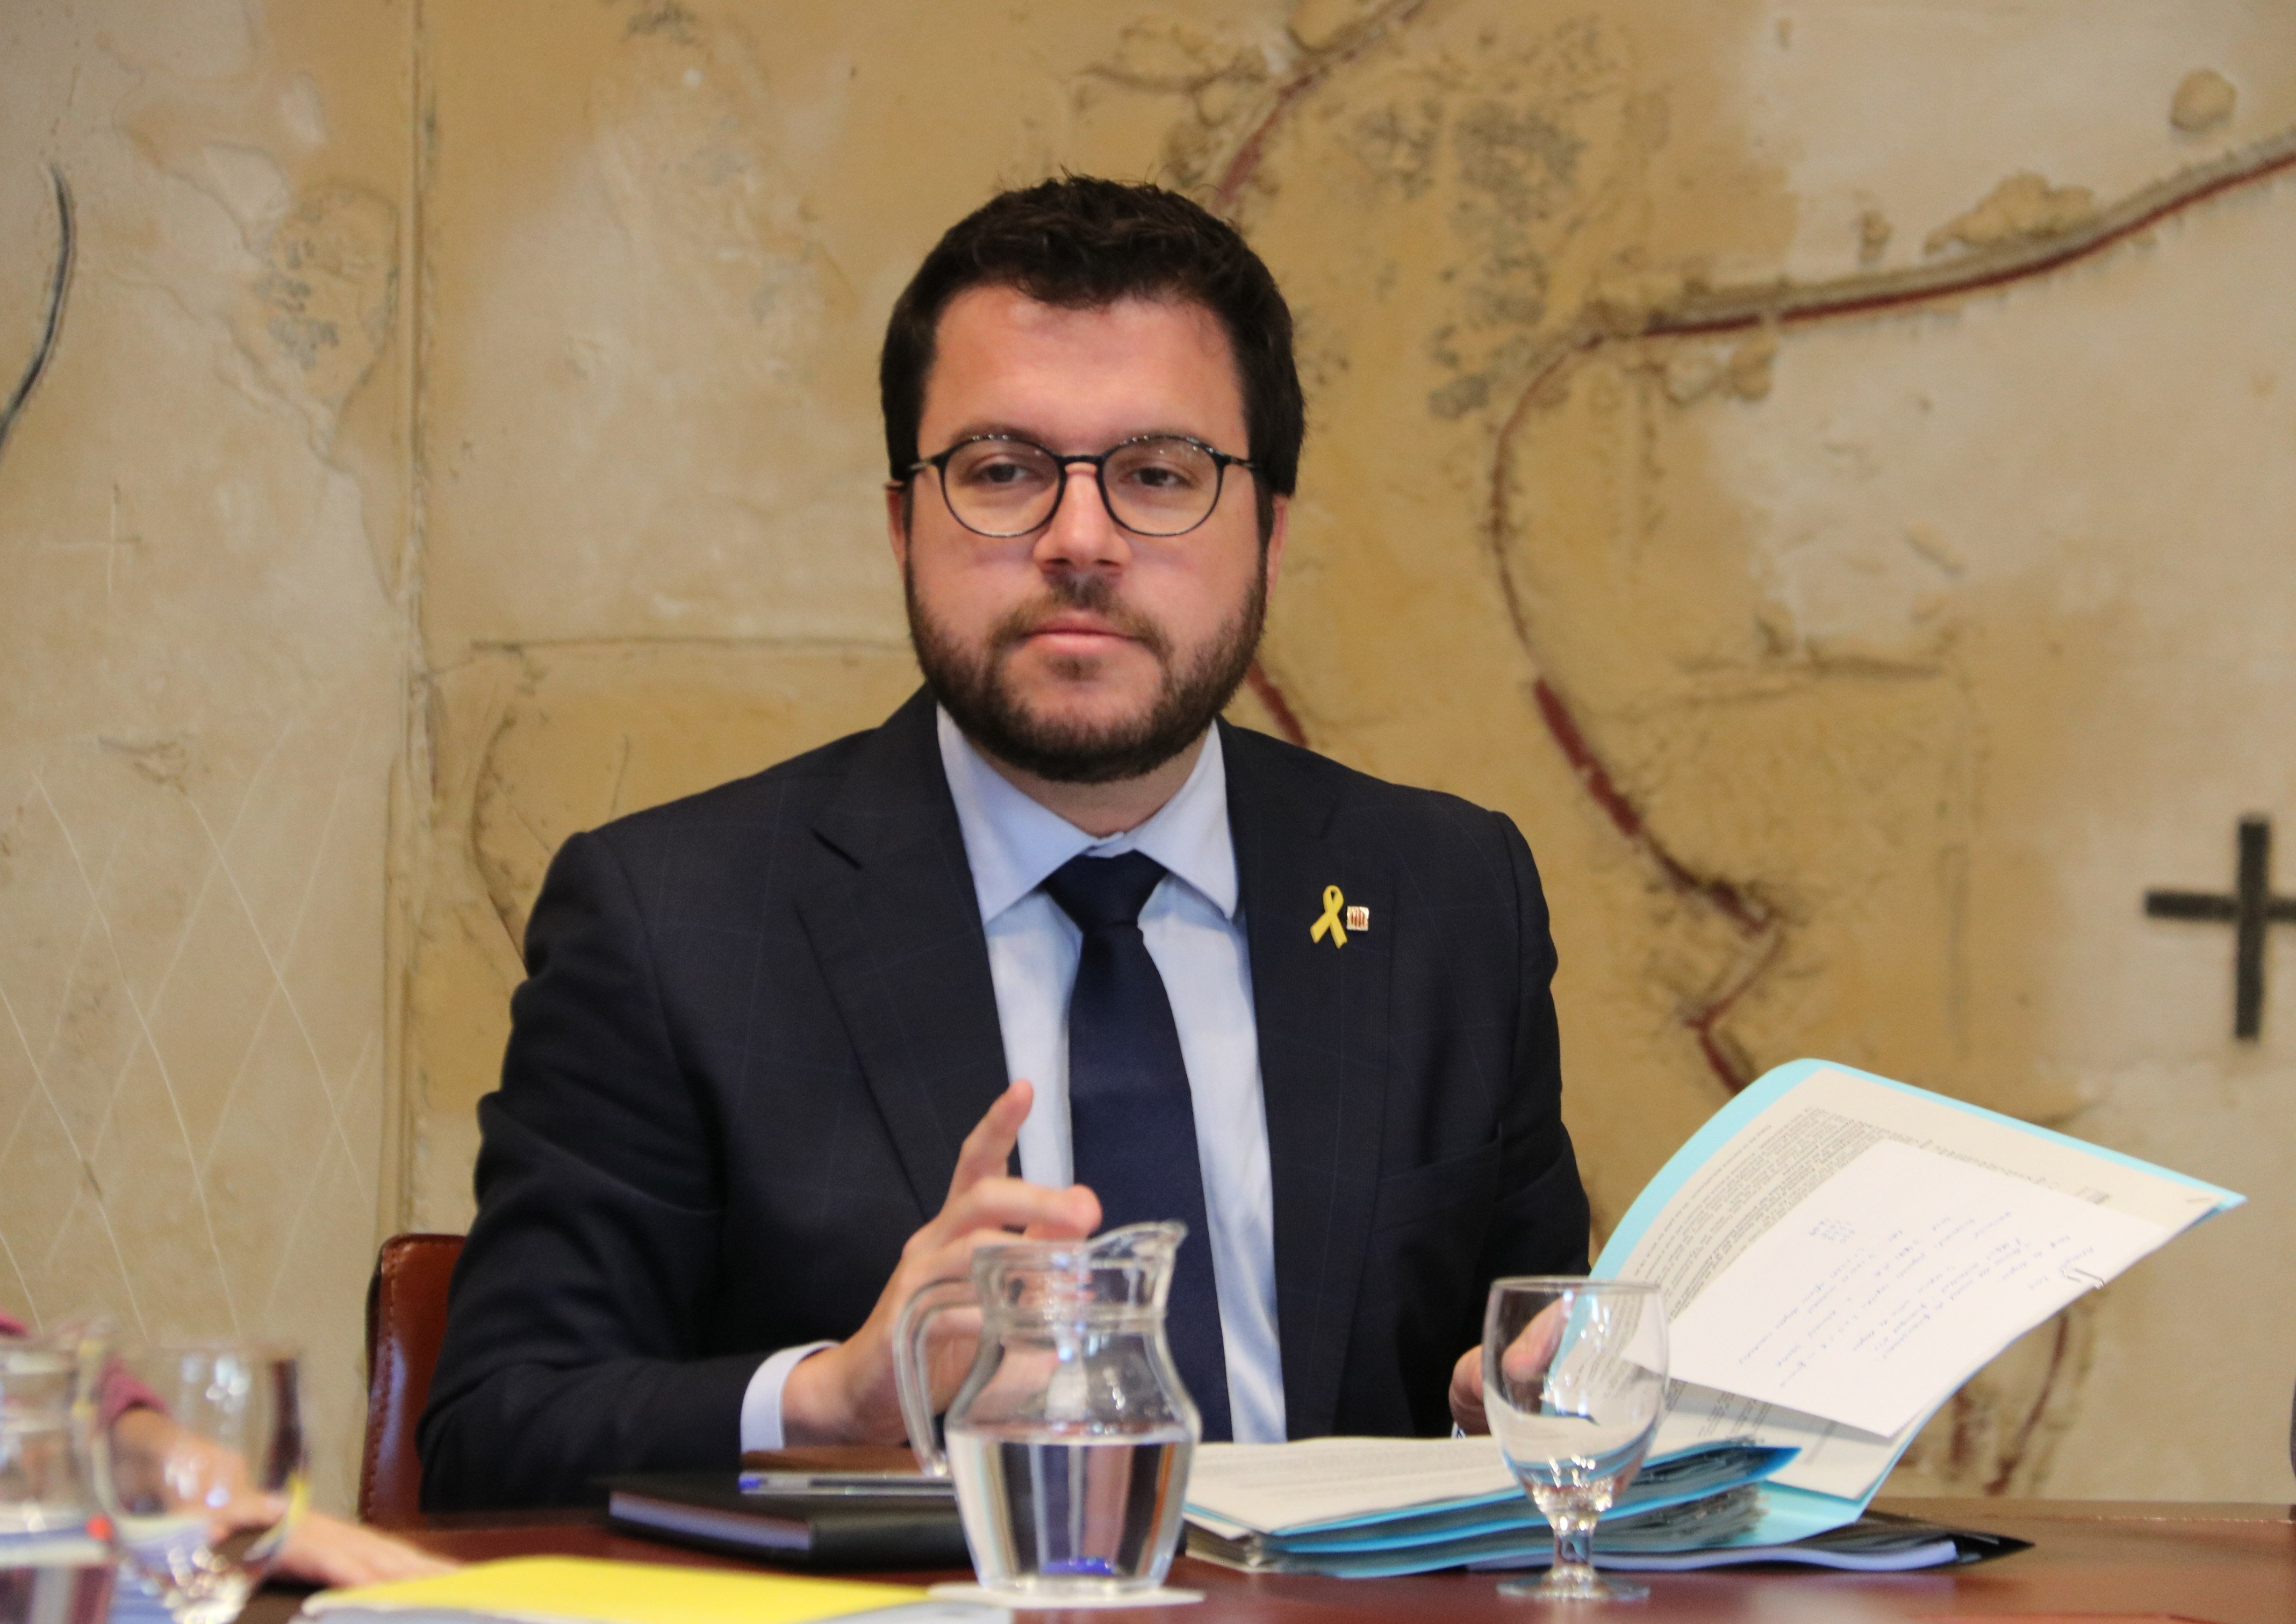 Aragonès defensa pactar "unitat estratègica" sobiranista i llistes separades